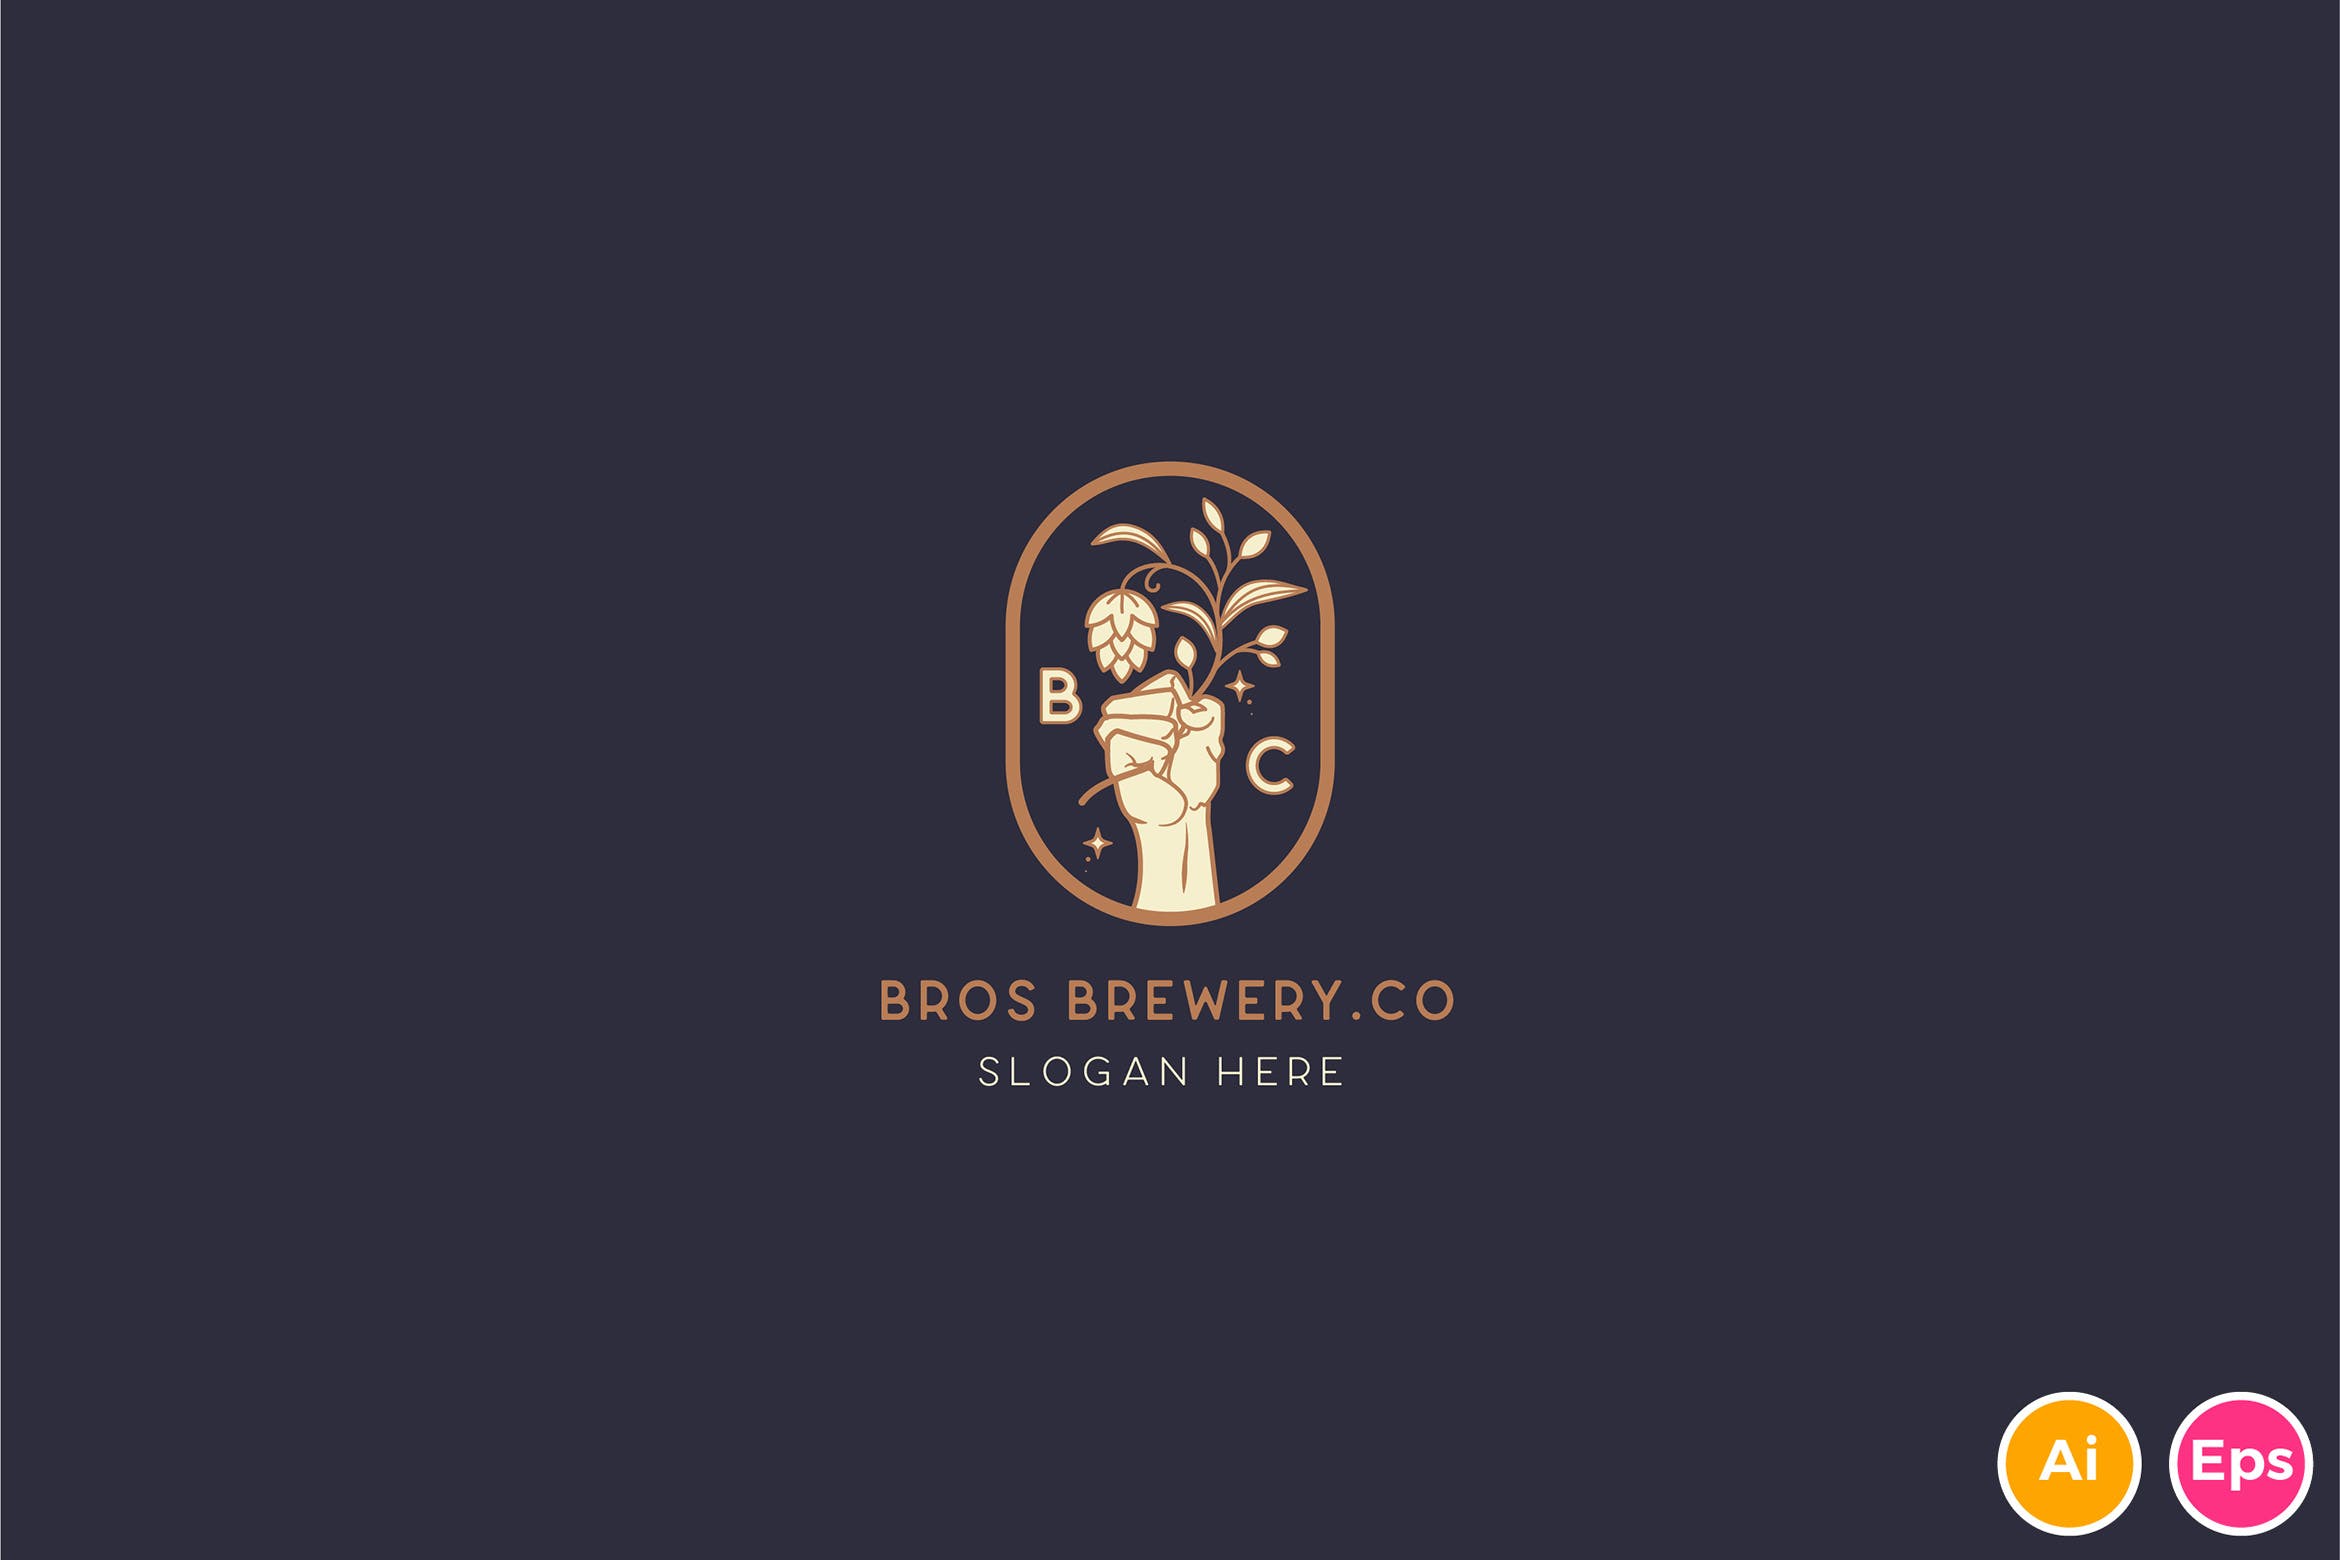 咖啡/啤酒品牌Logo设计蚂蚁素材精选模板 Brewery Brotherhood cafe beer Logo Template插图